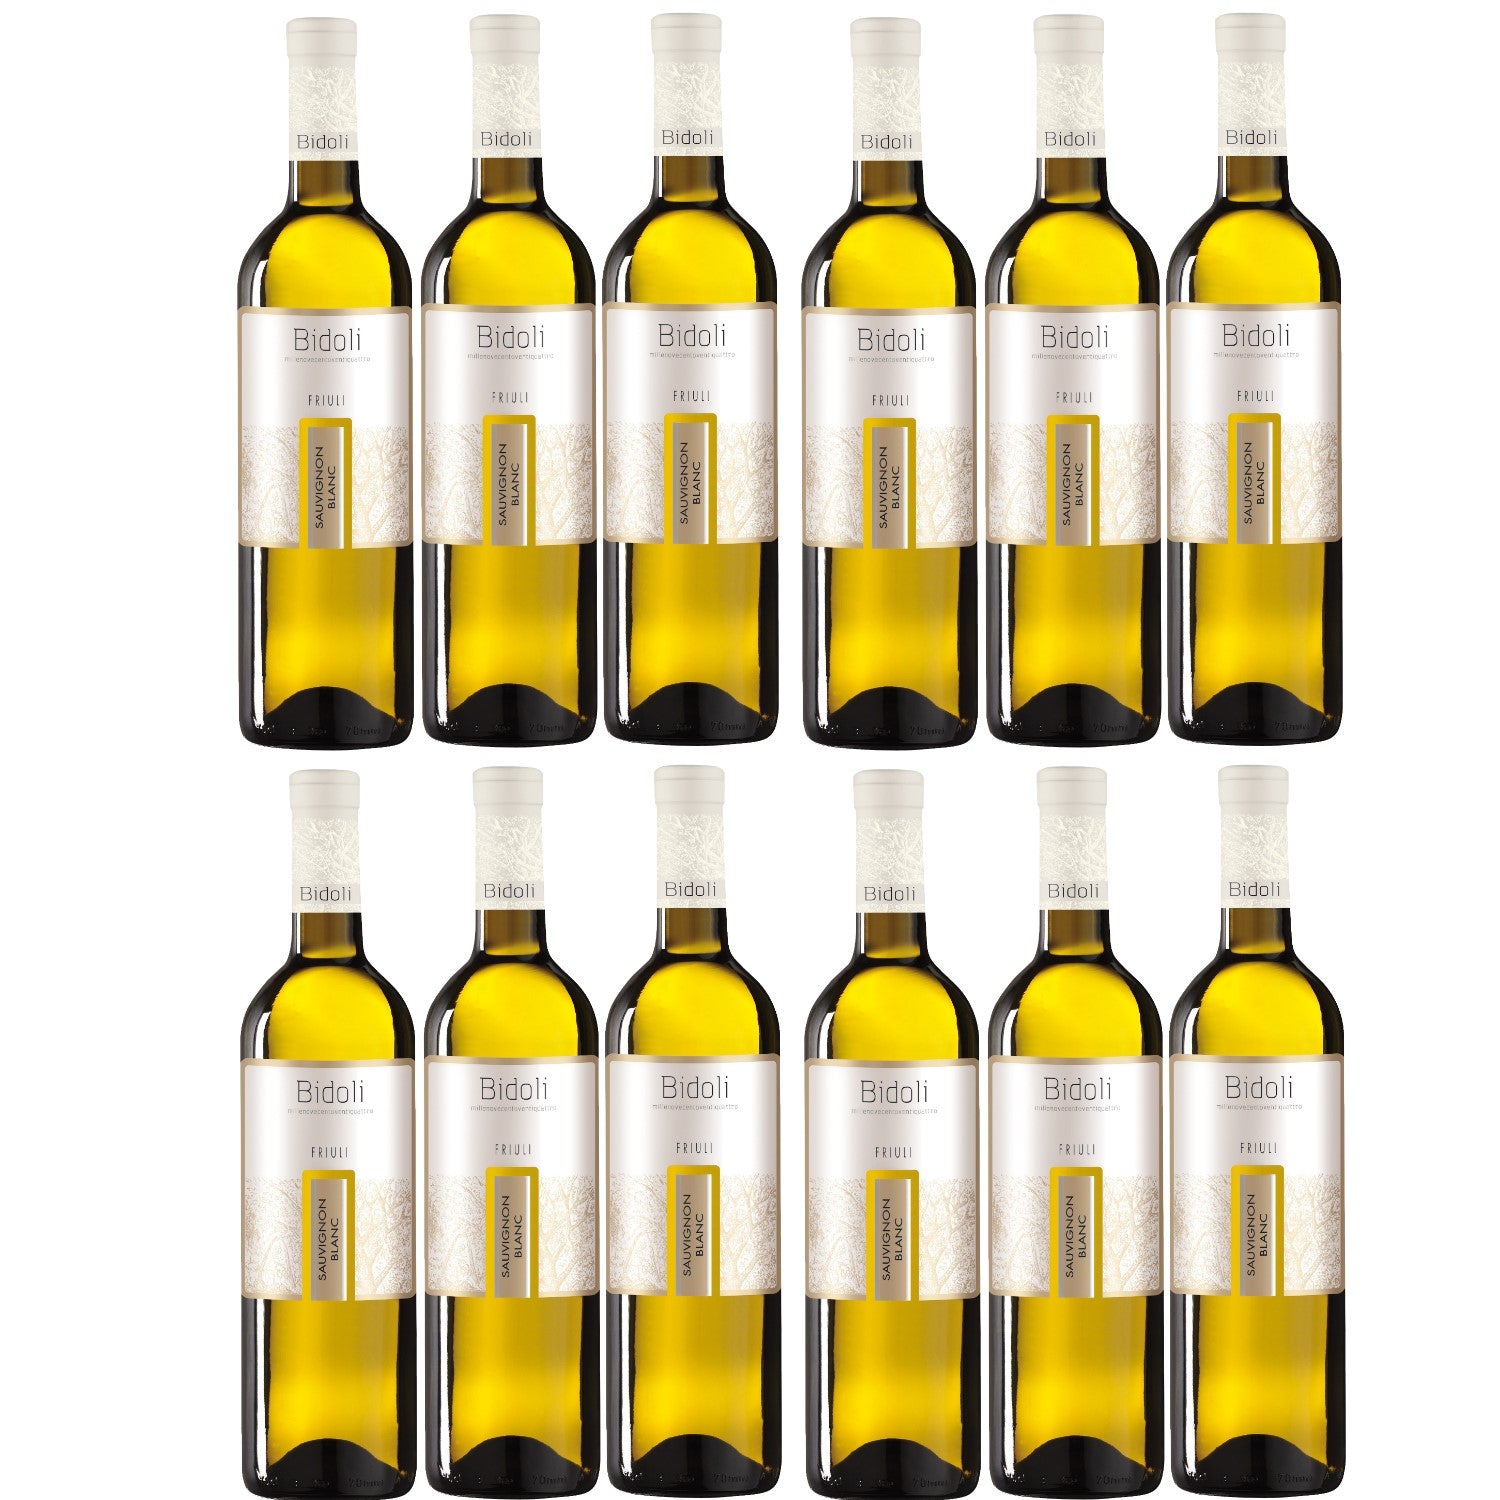 Bidoli Vini Sauvignon Blanc DOC Friuli Grave Weißwein Wein trocken Italien (12 x 0.75l) - Versanel -